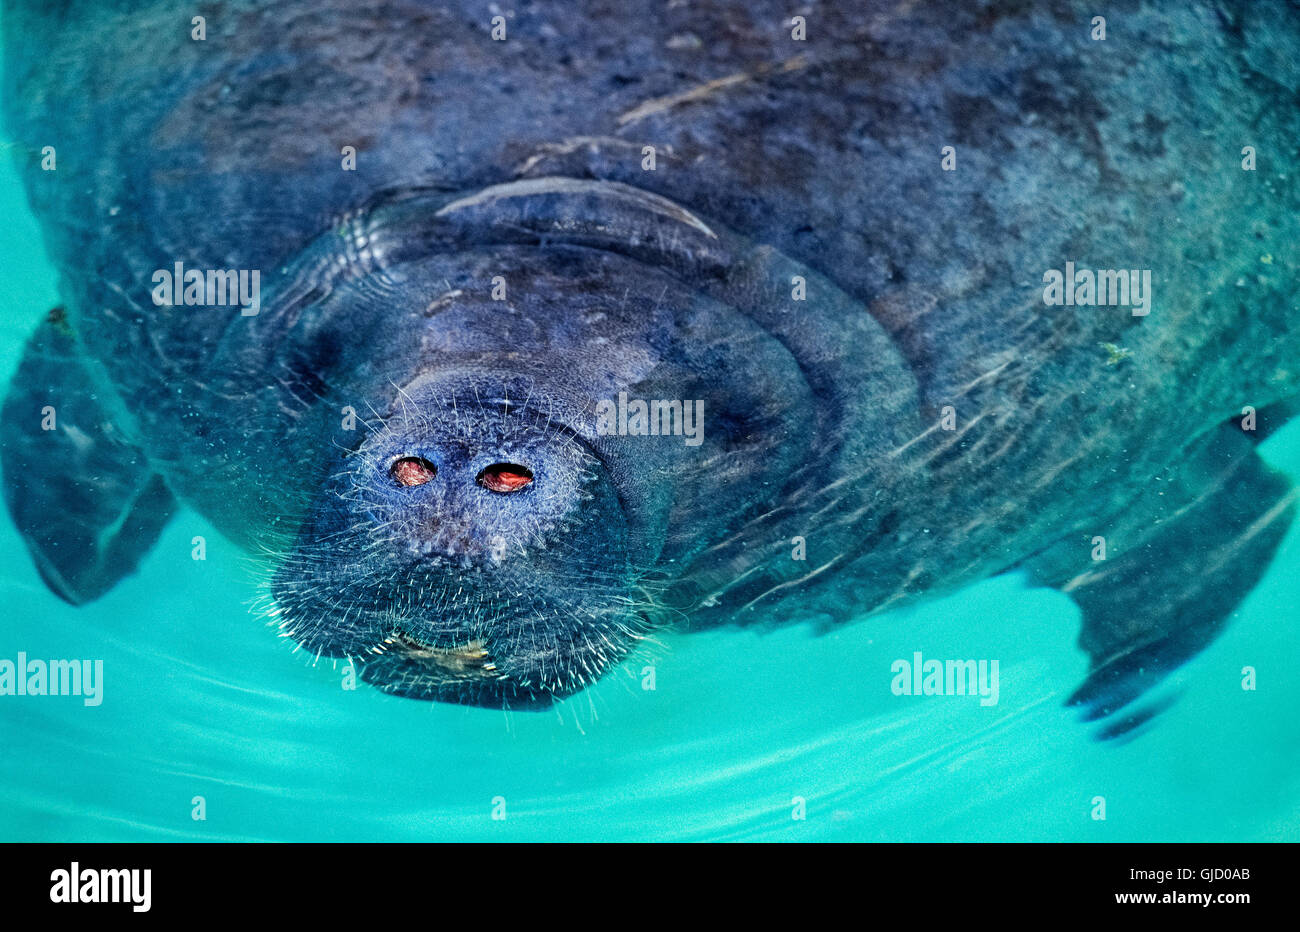 Die Schnauze des ein West Indian Manatee (Trichechus Manatus) macht sich lustig über dem Wasser, offenbaren seine zwei Nasenlöcher atmen und die Barthaare, die geglaubt werden, um irgendeine Art von sensorische Funktion für diese Meeressäuger dienen, die auch eine Seekuh genannt wird. Stockfoto